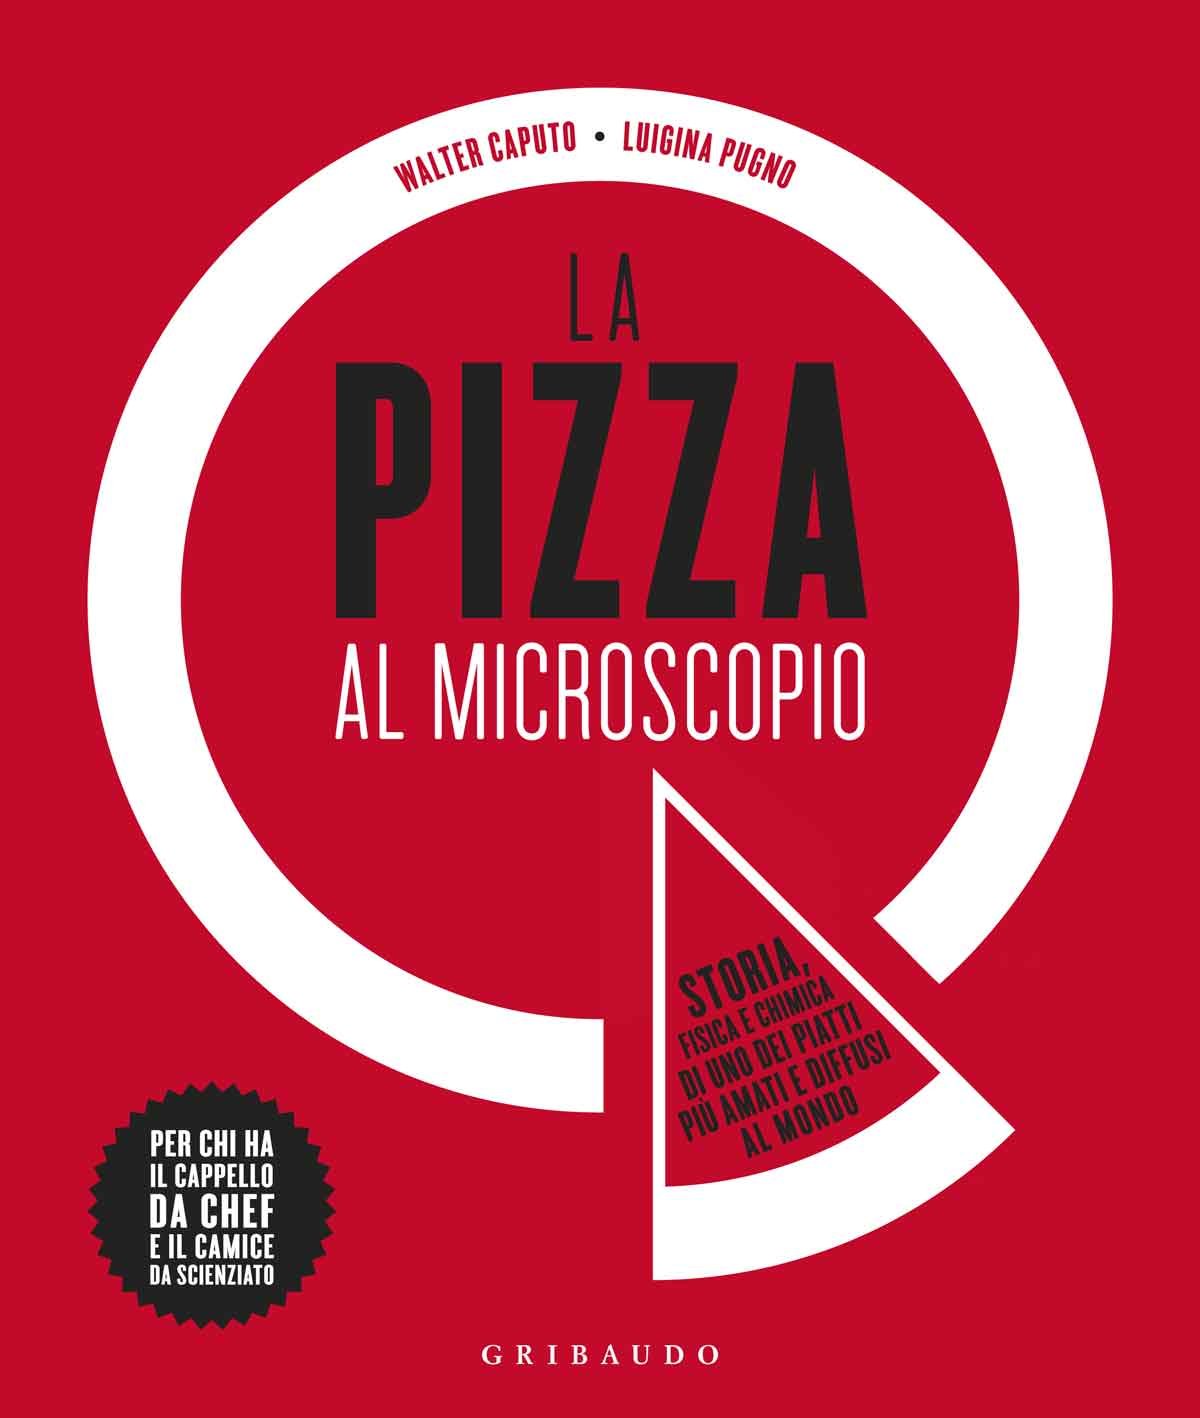 La pizza al microscopio